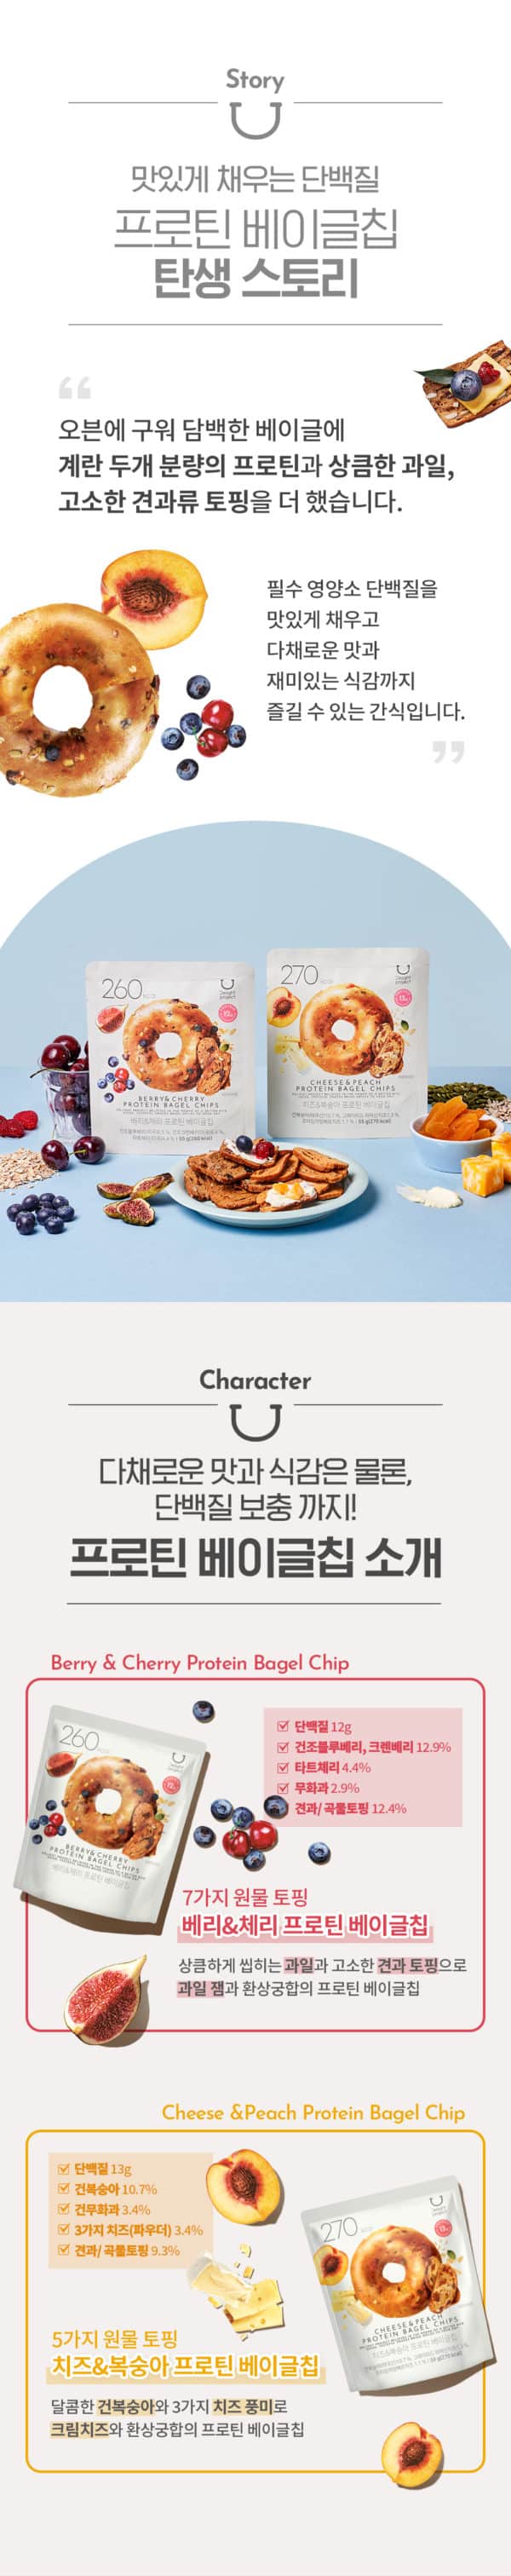 韓國食品-[Delight Project] 莓果&車厘子蛋白低熱量貝果脆餅乾 55g